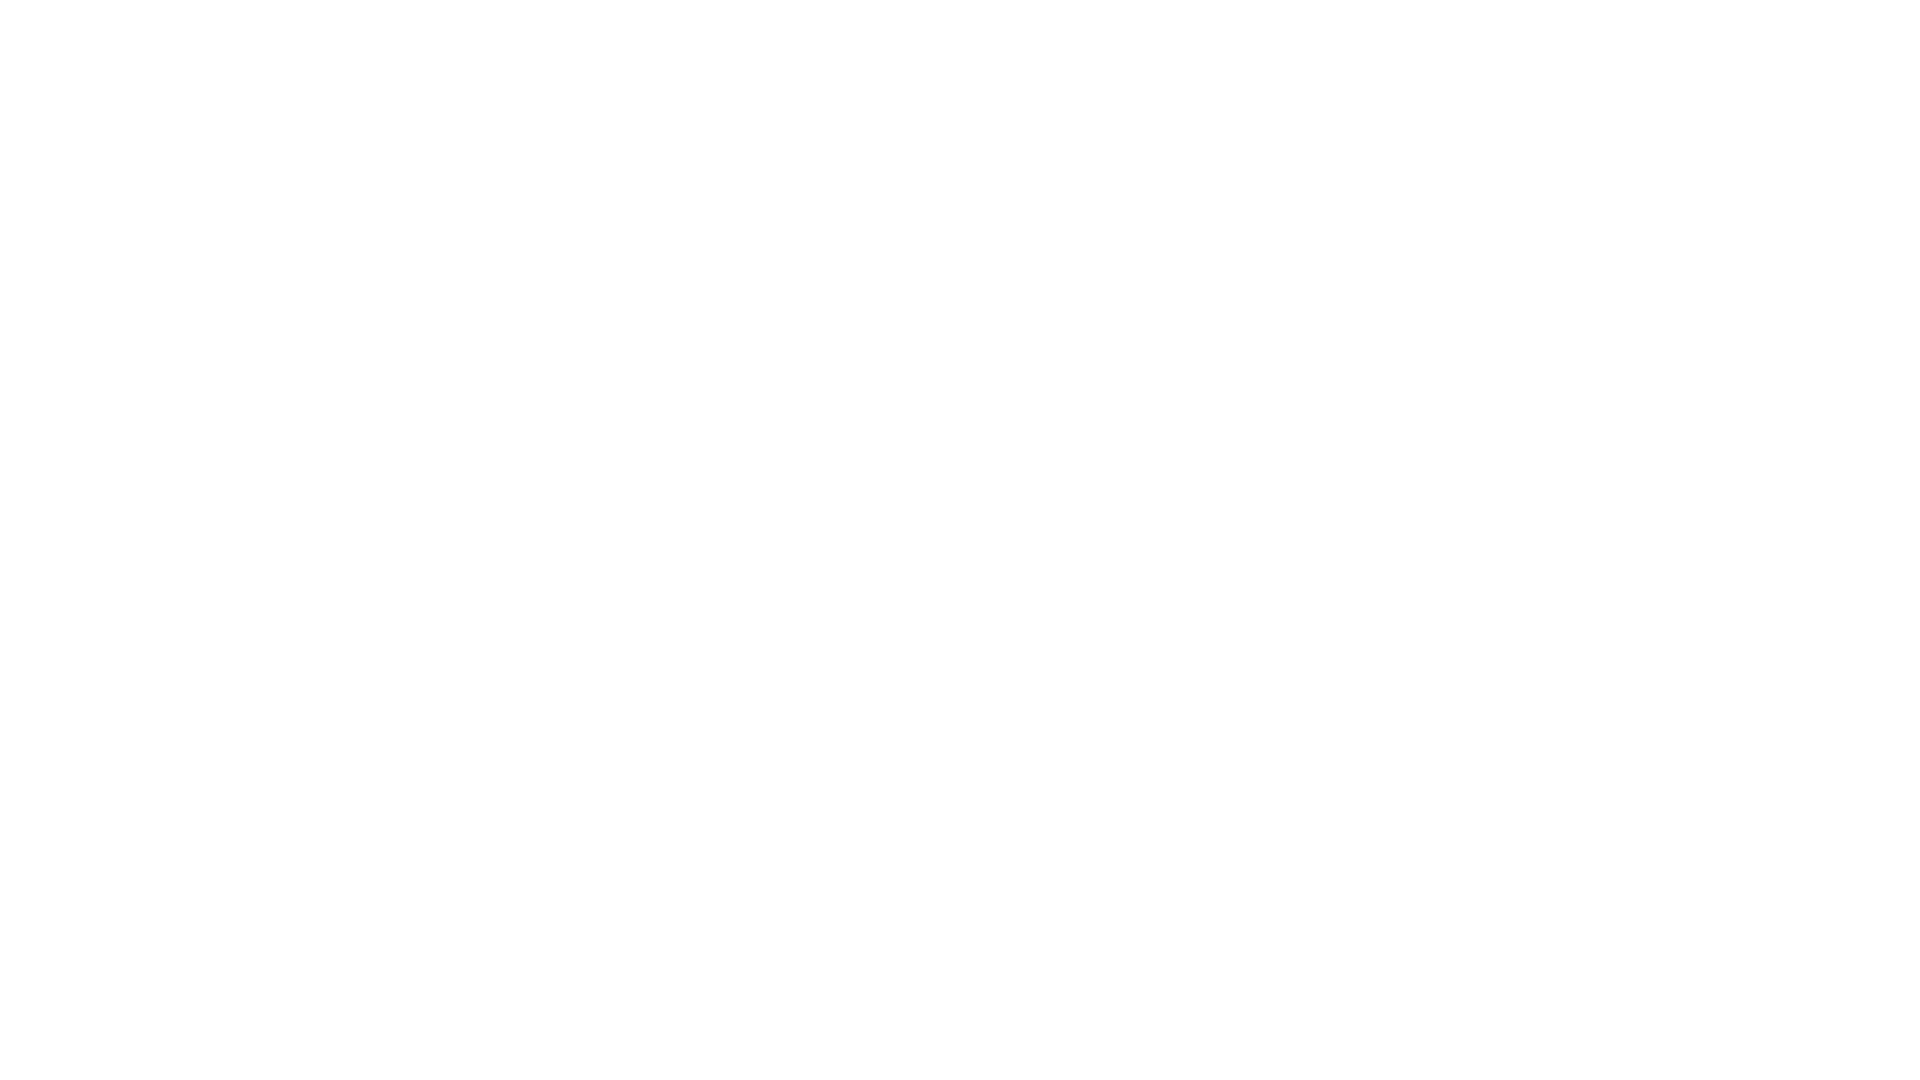 DigitalKar